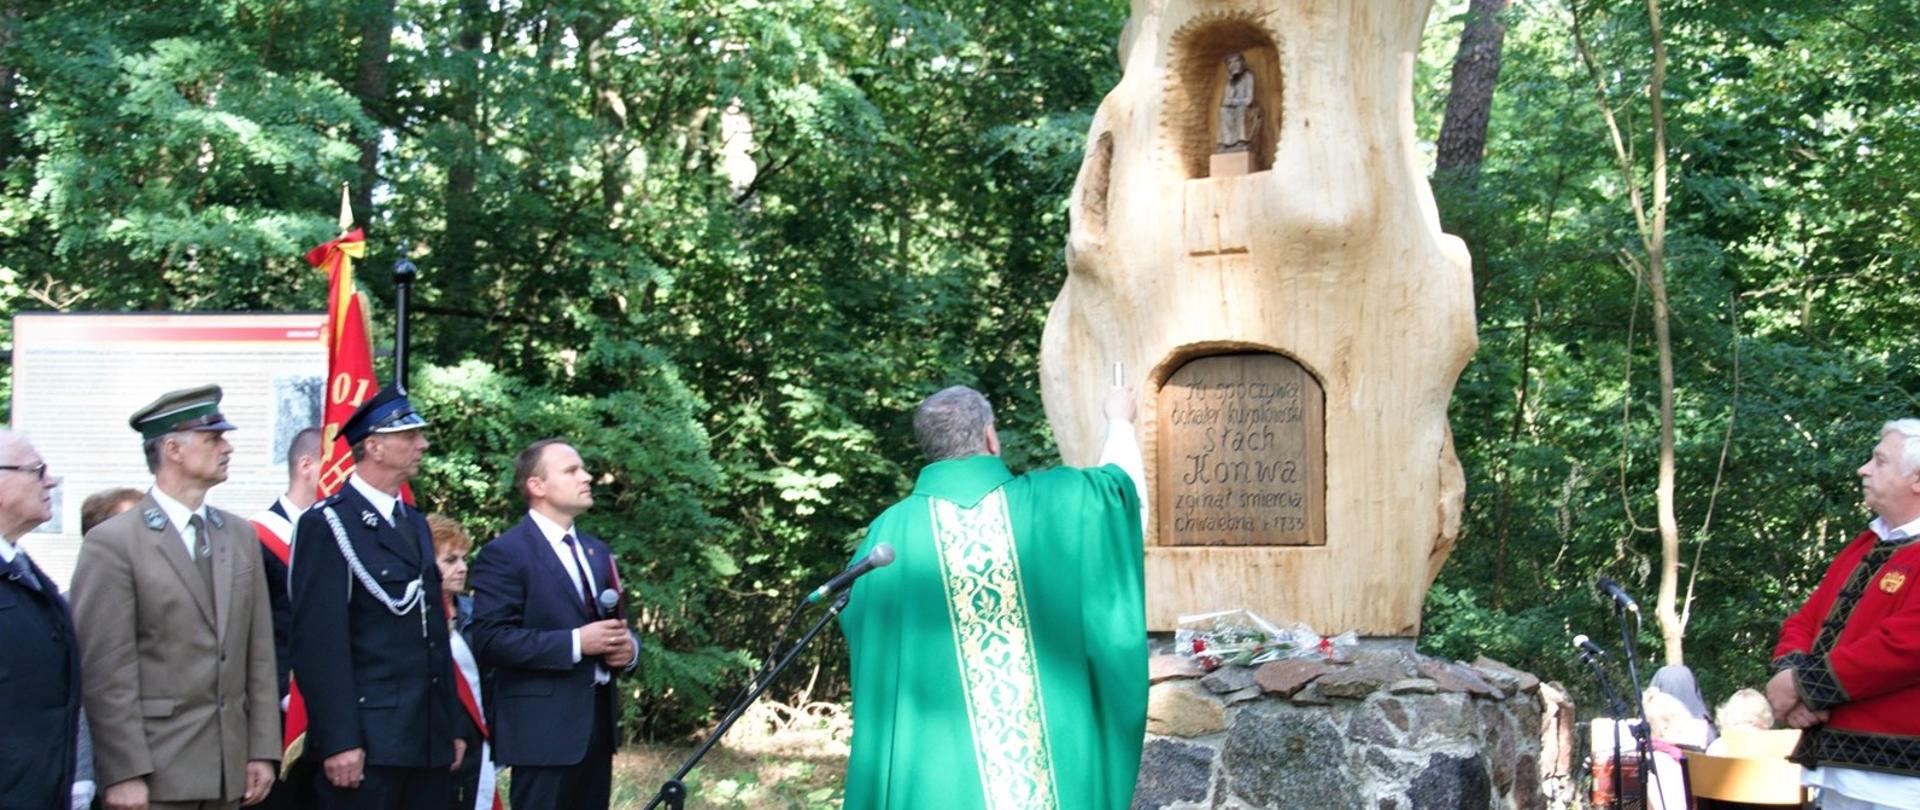 W Lesie Jednaczewskim k. Łomży odsłonięto odnowiony pomnik Stacha Konwy, źródło: Gmina Łomża